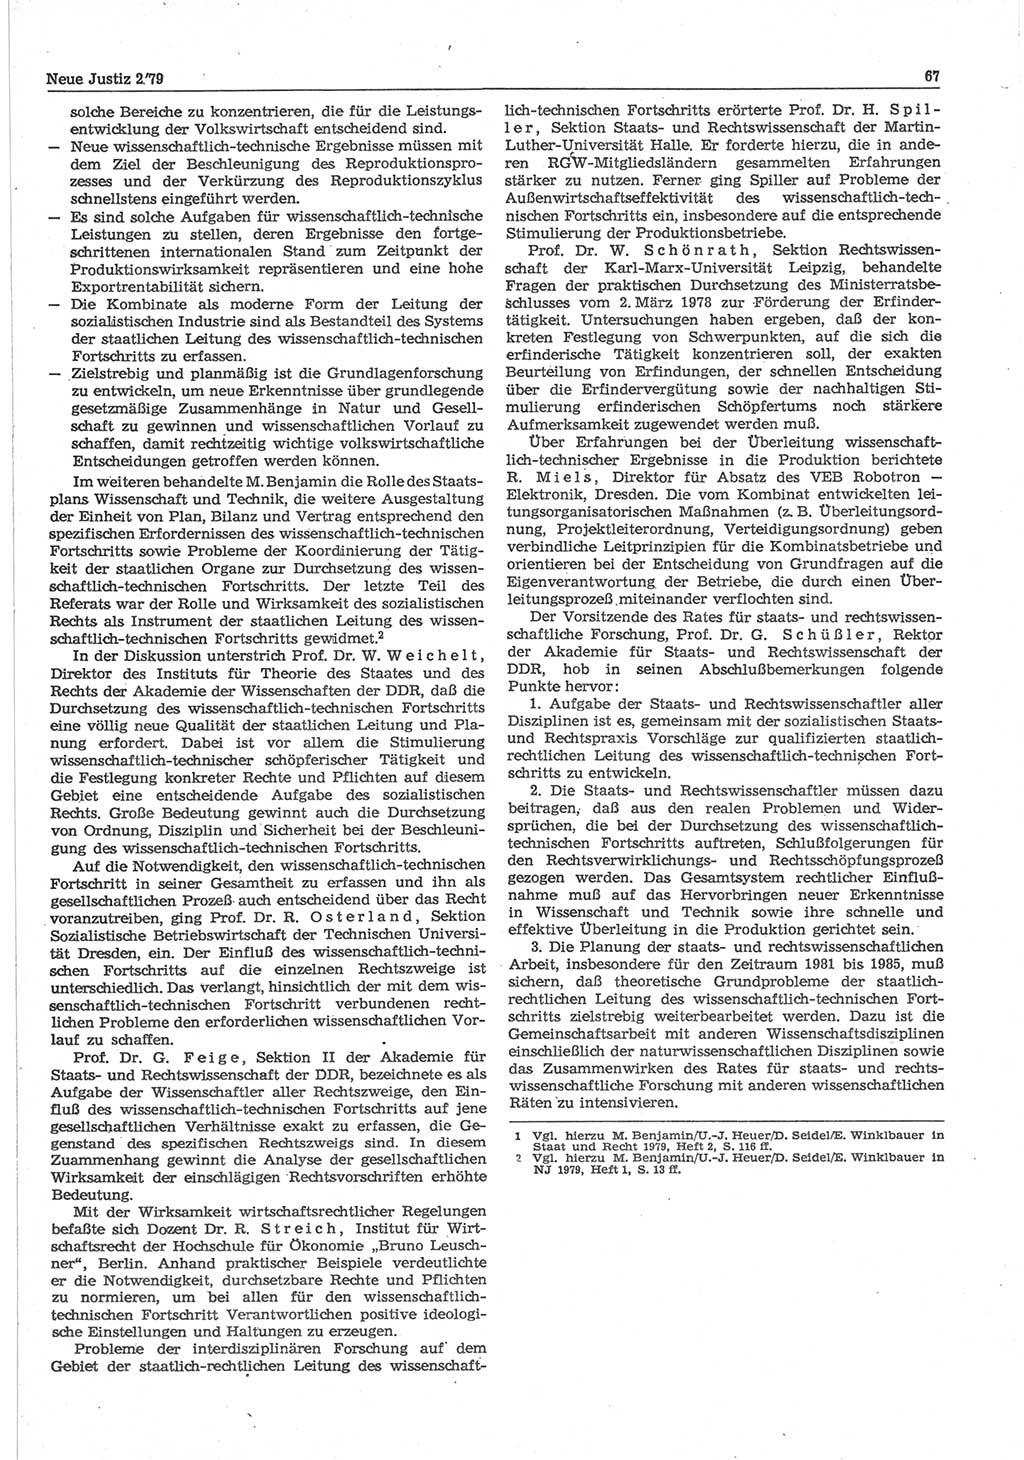 Neue Justiz (NJ), Zeitschrift für sozialistisches Recht und Gesetzlichkeit [Deutsche Demokratische Republik (DDR)], 33. Jahrgang 1979, Seite 67 (NJ DDR 1979, S. 67)